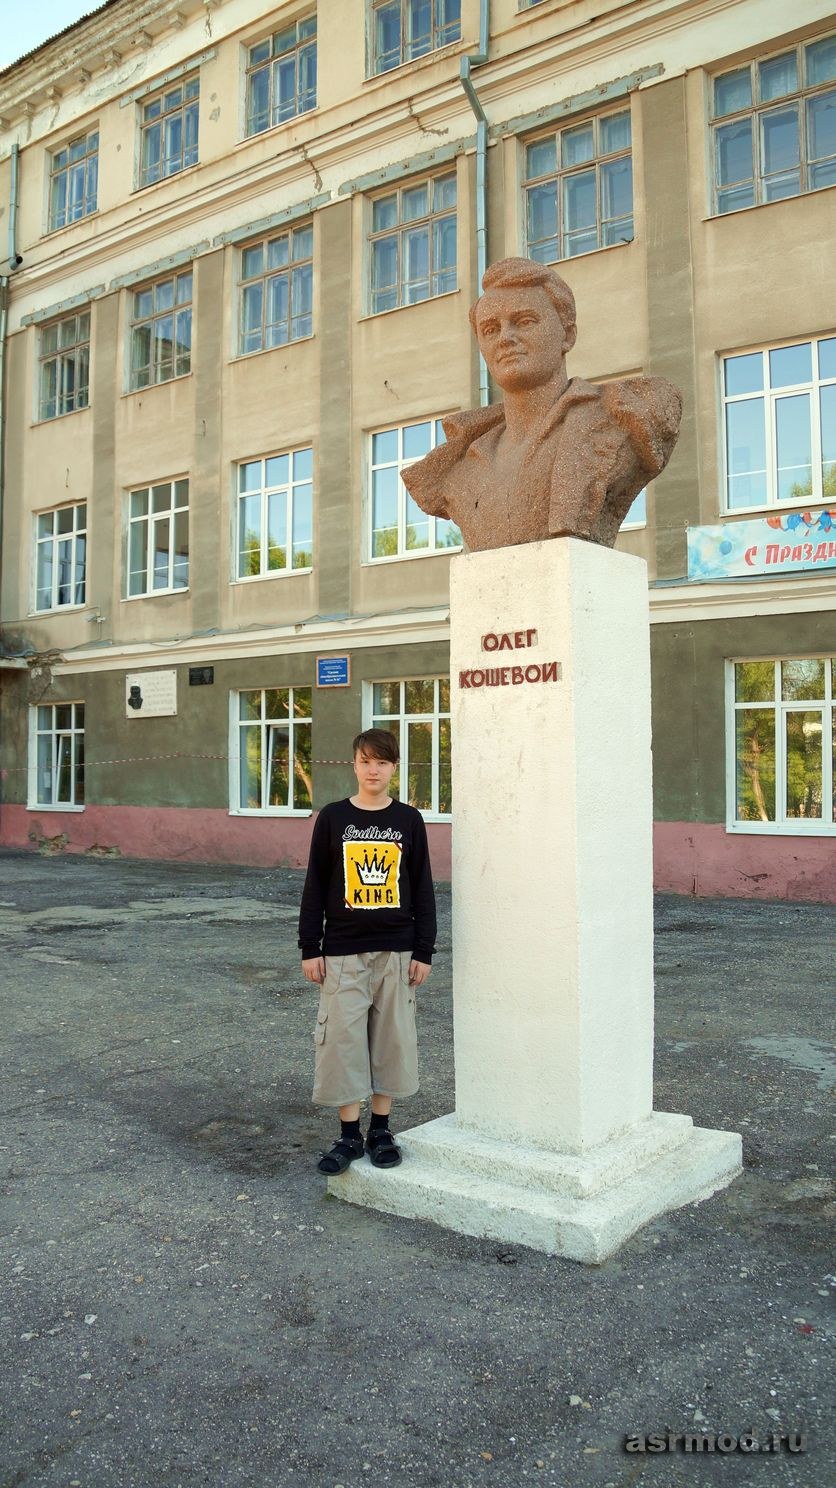 Саратов. Памятник Олегу Кошевому